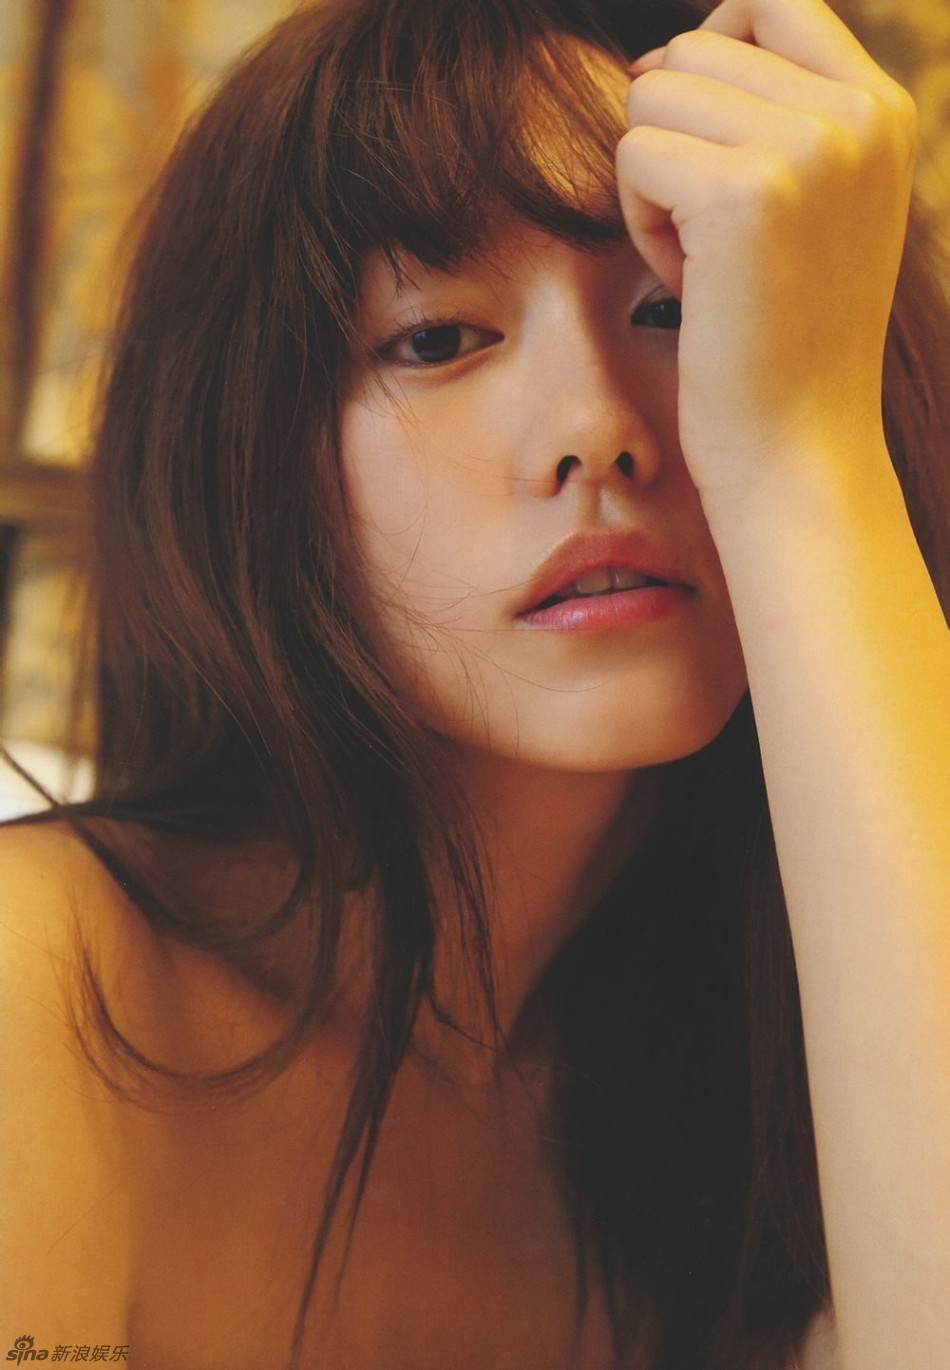 日本女星桐谷美玲拍写真 着嫩黄连衣裙露美背